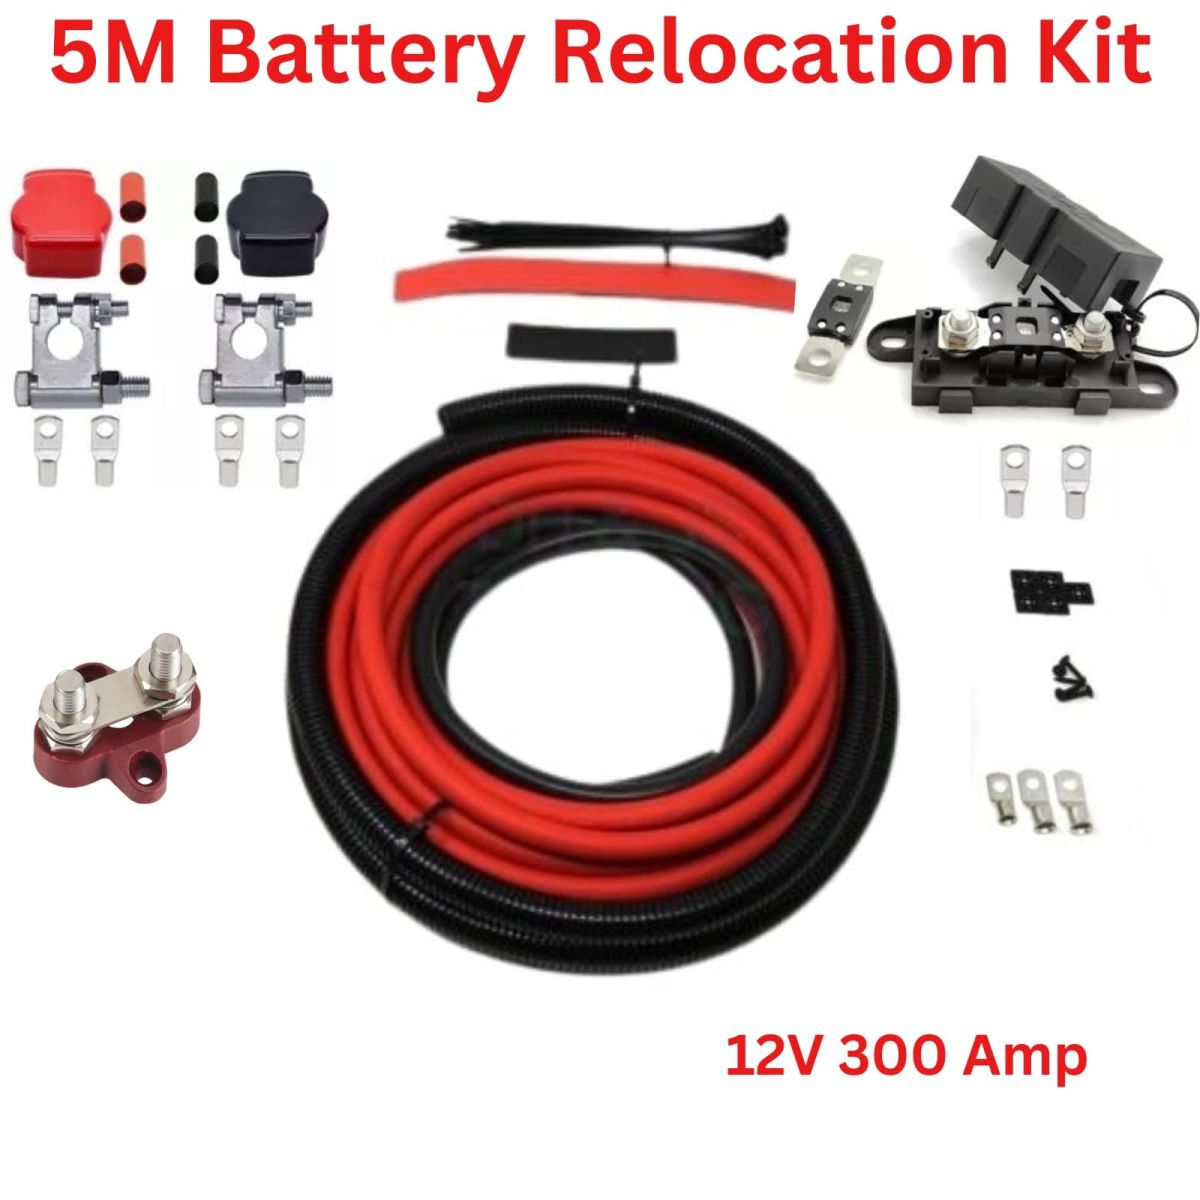 Battery Relocation kit, Battery Relocation kit, universal Battery Relocation kit 